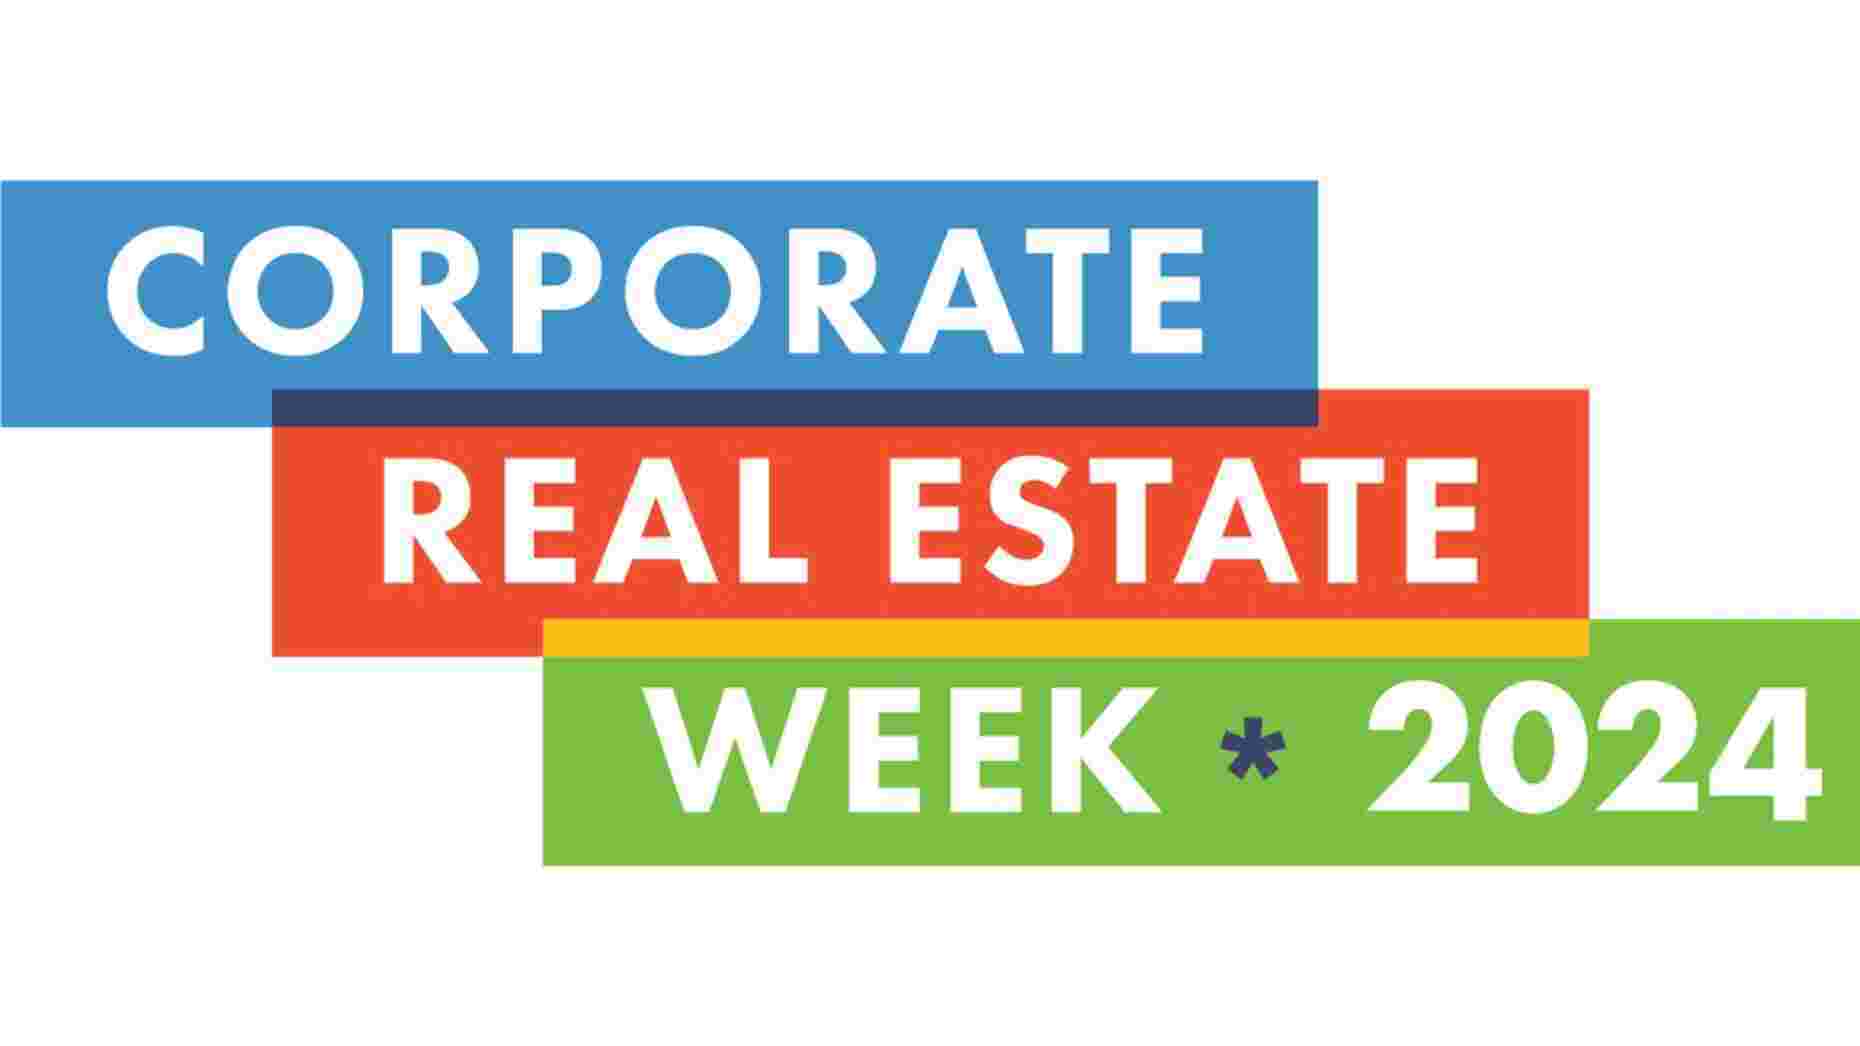 Corporate Real Estate Week 2024